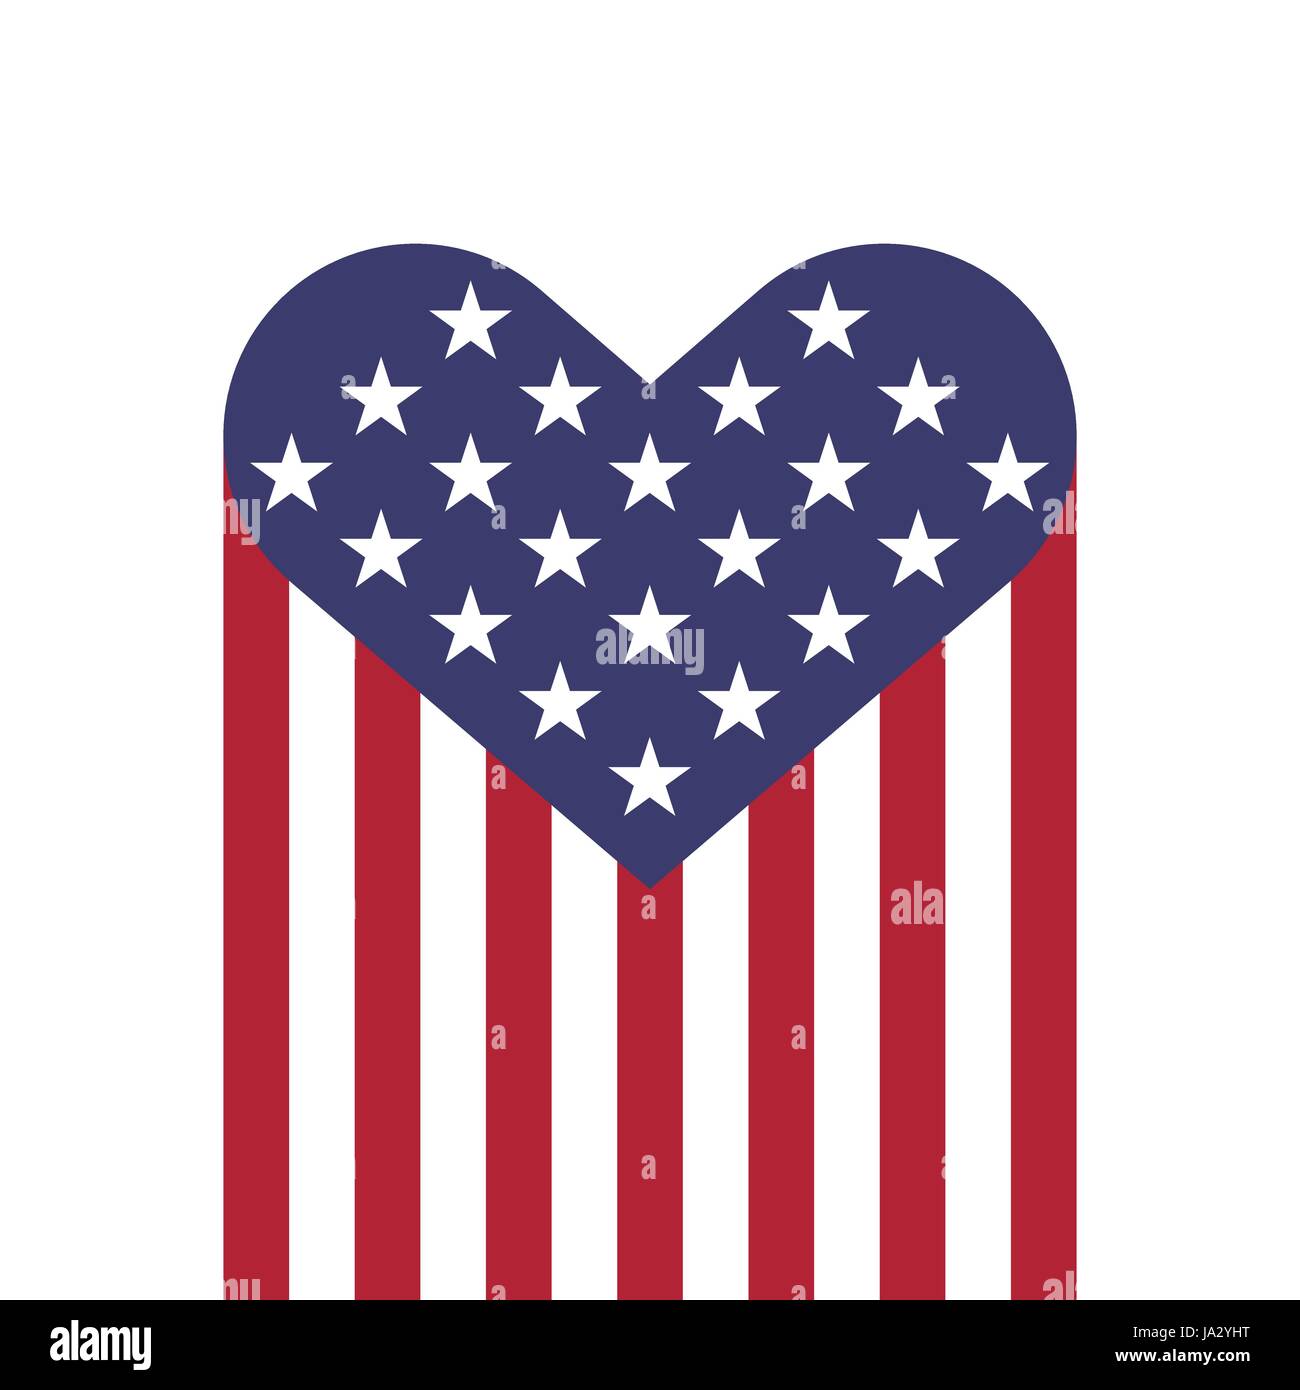 Drapeau USA forme coeurs vector illustration pour le jour de l'indépendance, Memorial Day ou d'autres Illustration de Vecteur